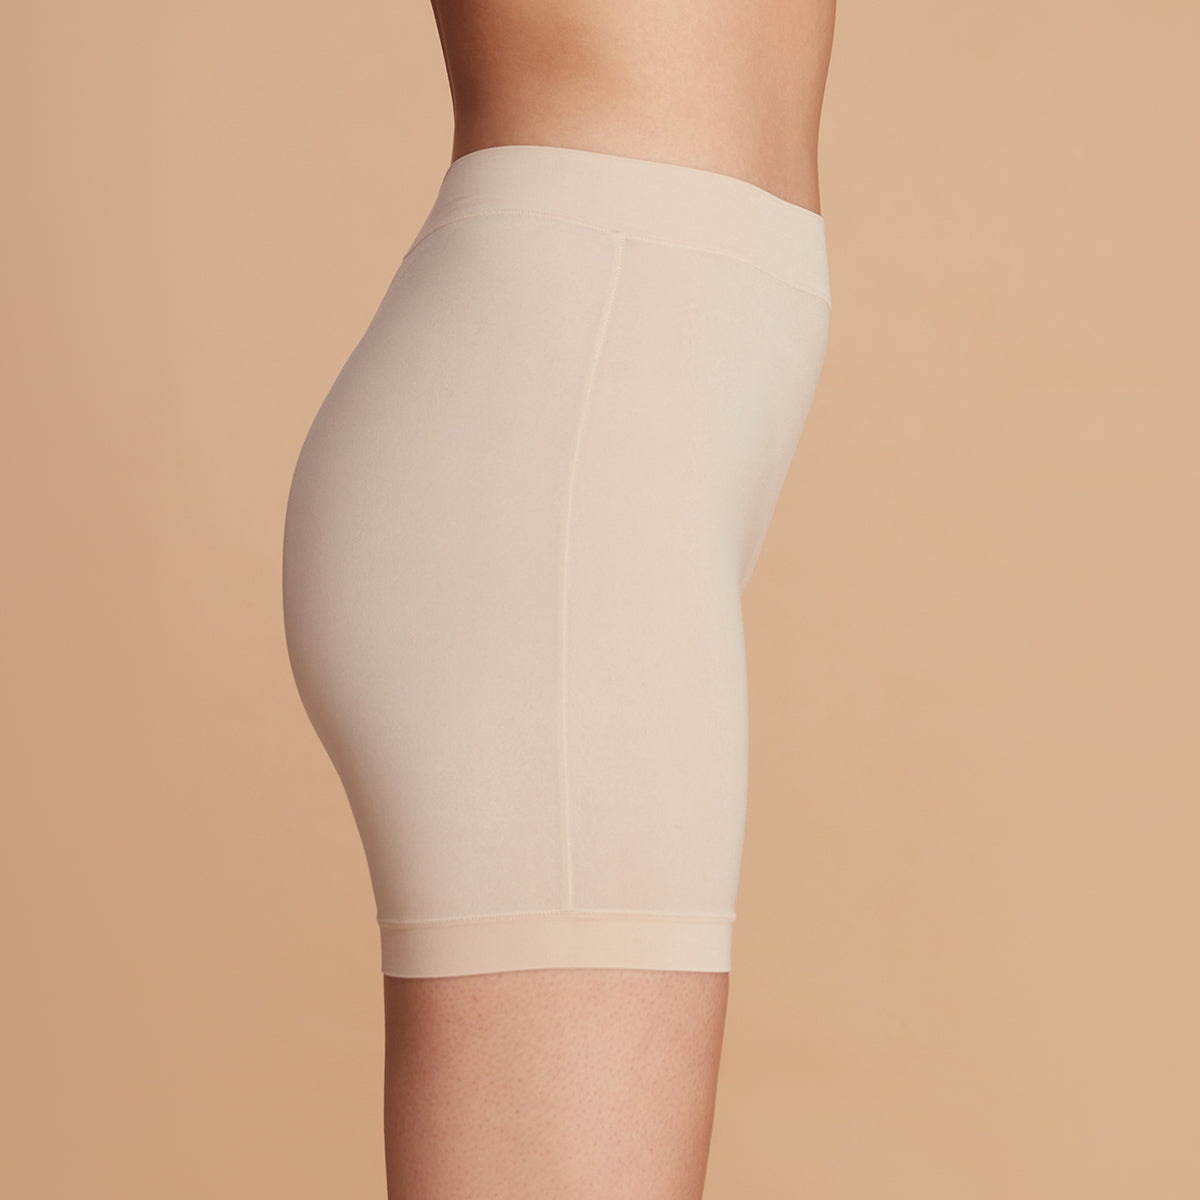 Nykd by nykaa Anti Chafe Shorts - NYP357 - Skin